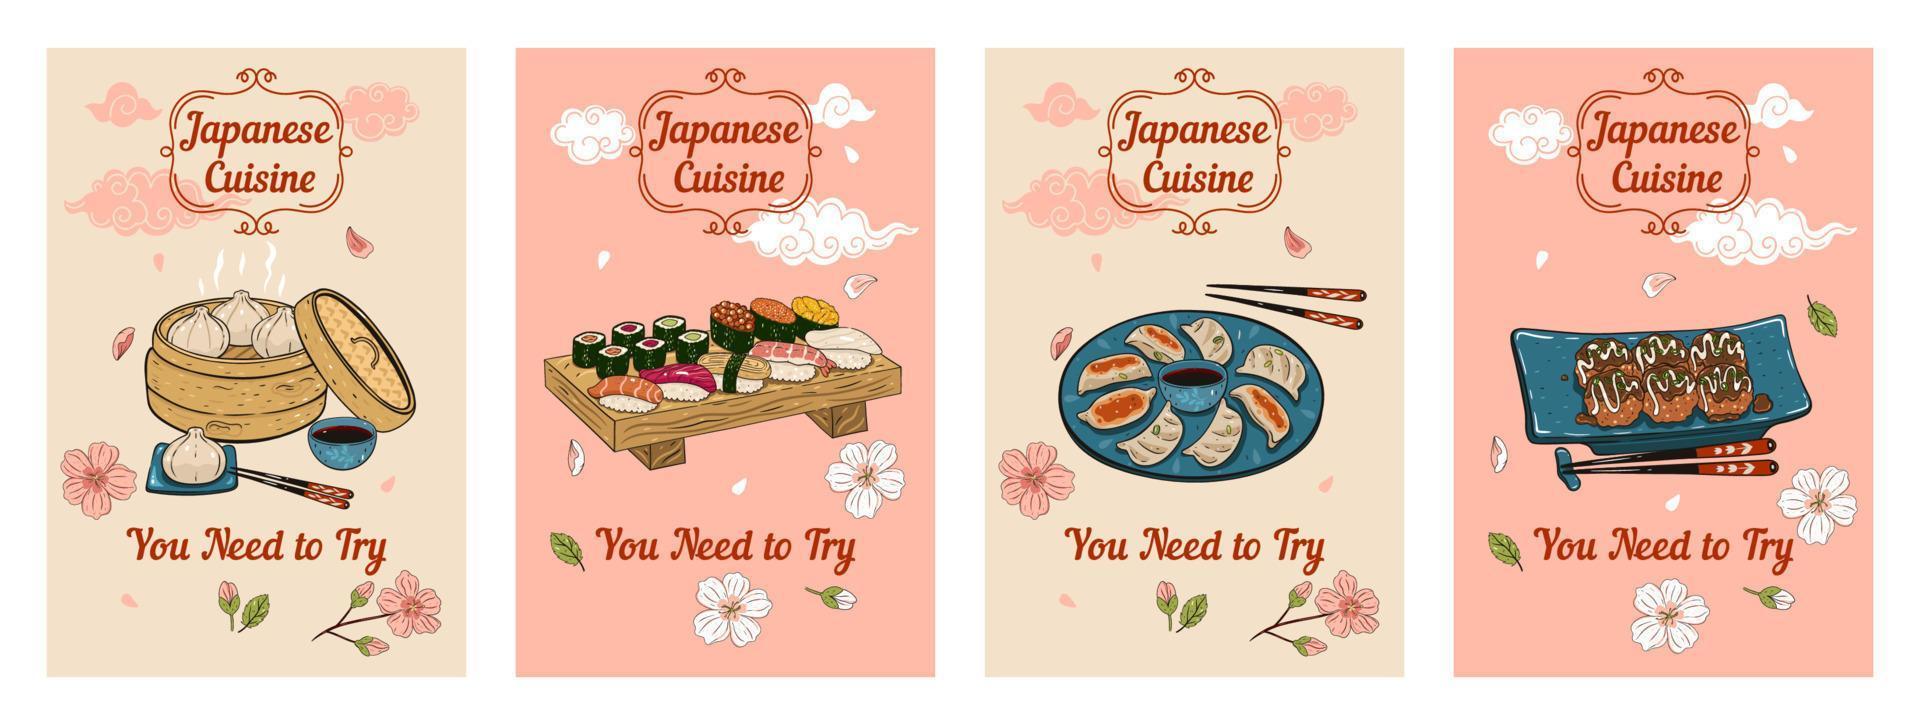 impostato di banner con illustrazioni di giapponese cucina. vettore grafica